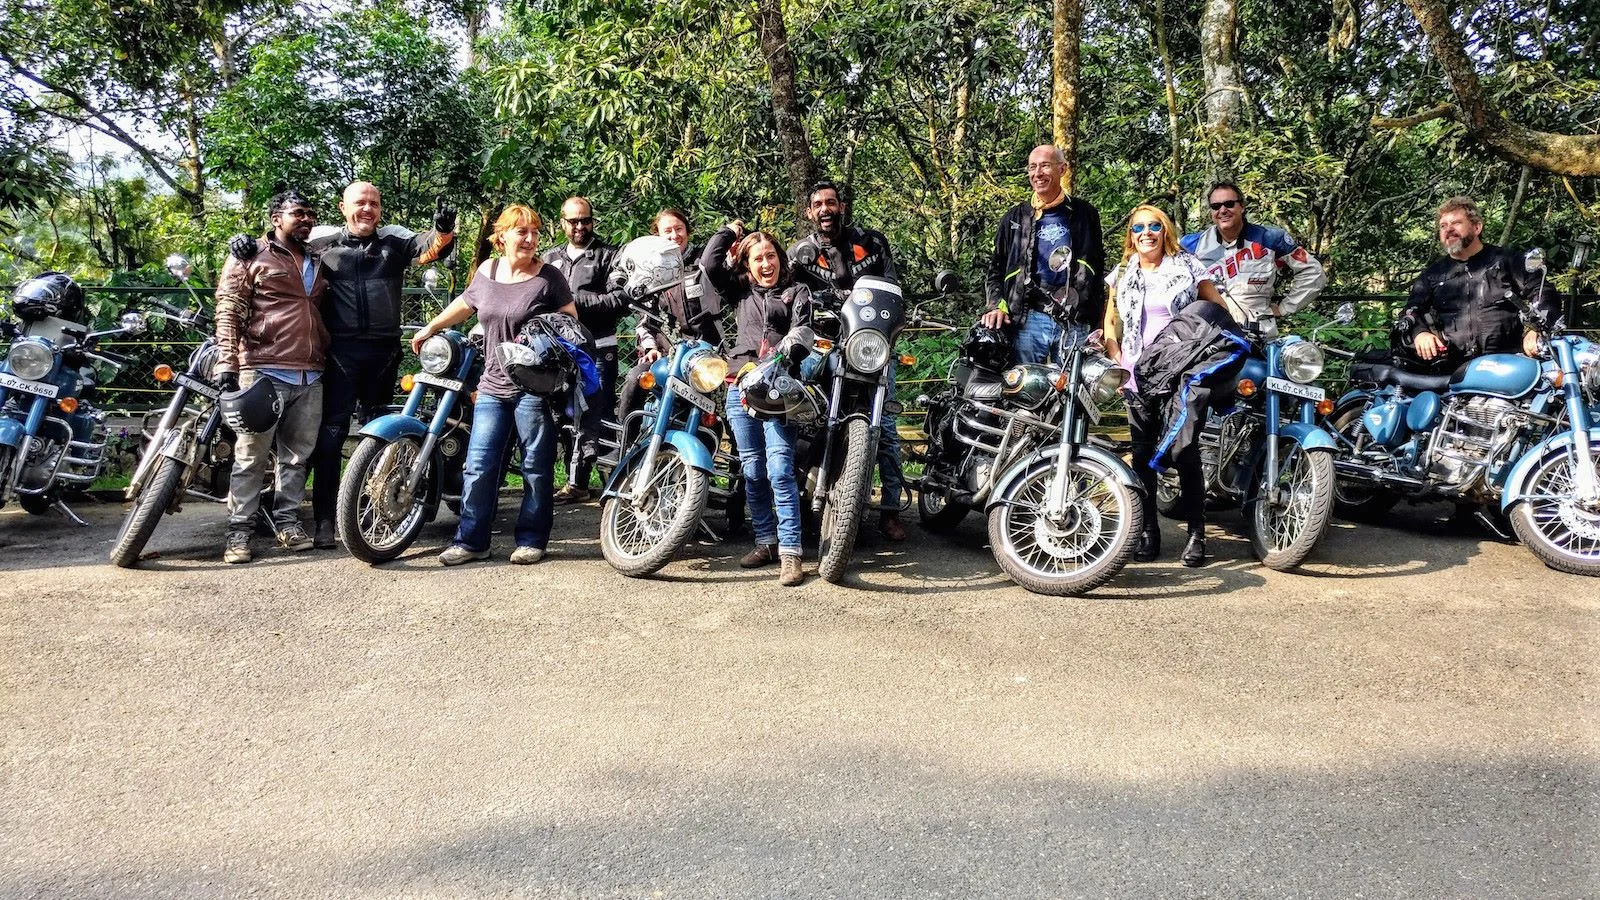 Plantaciones del Sur de India en Moto con Alicia Sornosa